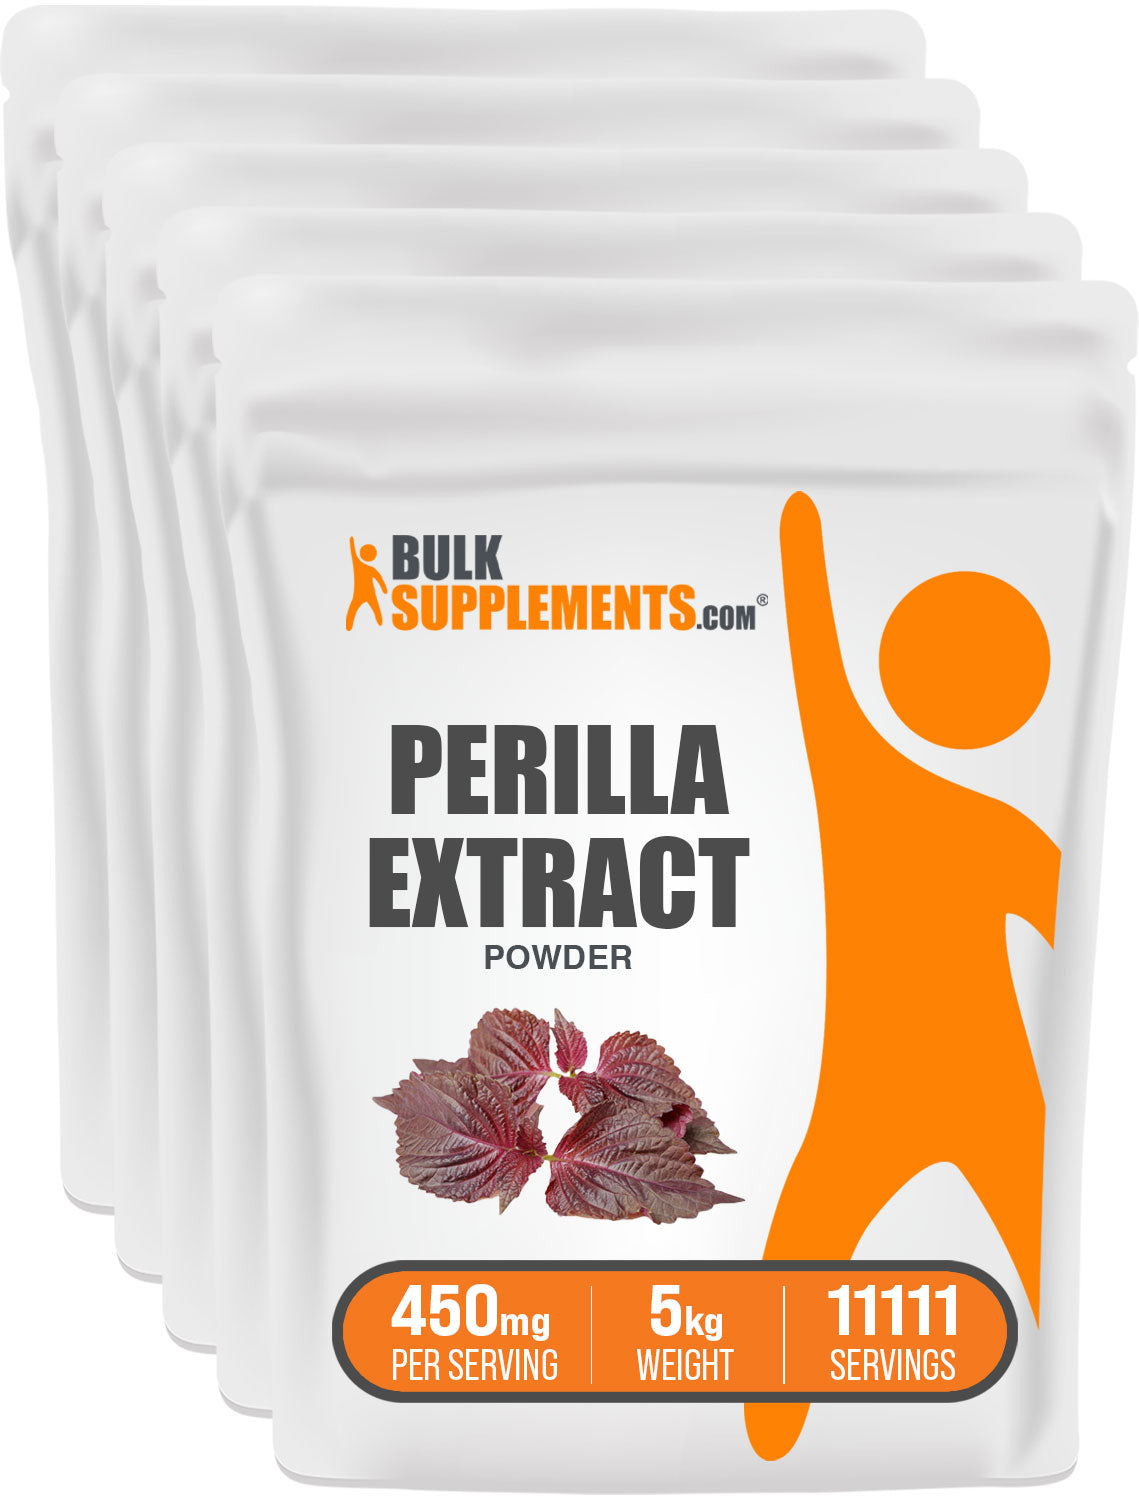 Perilla Extract 5kg Bag